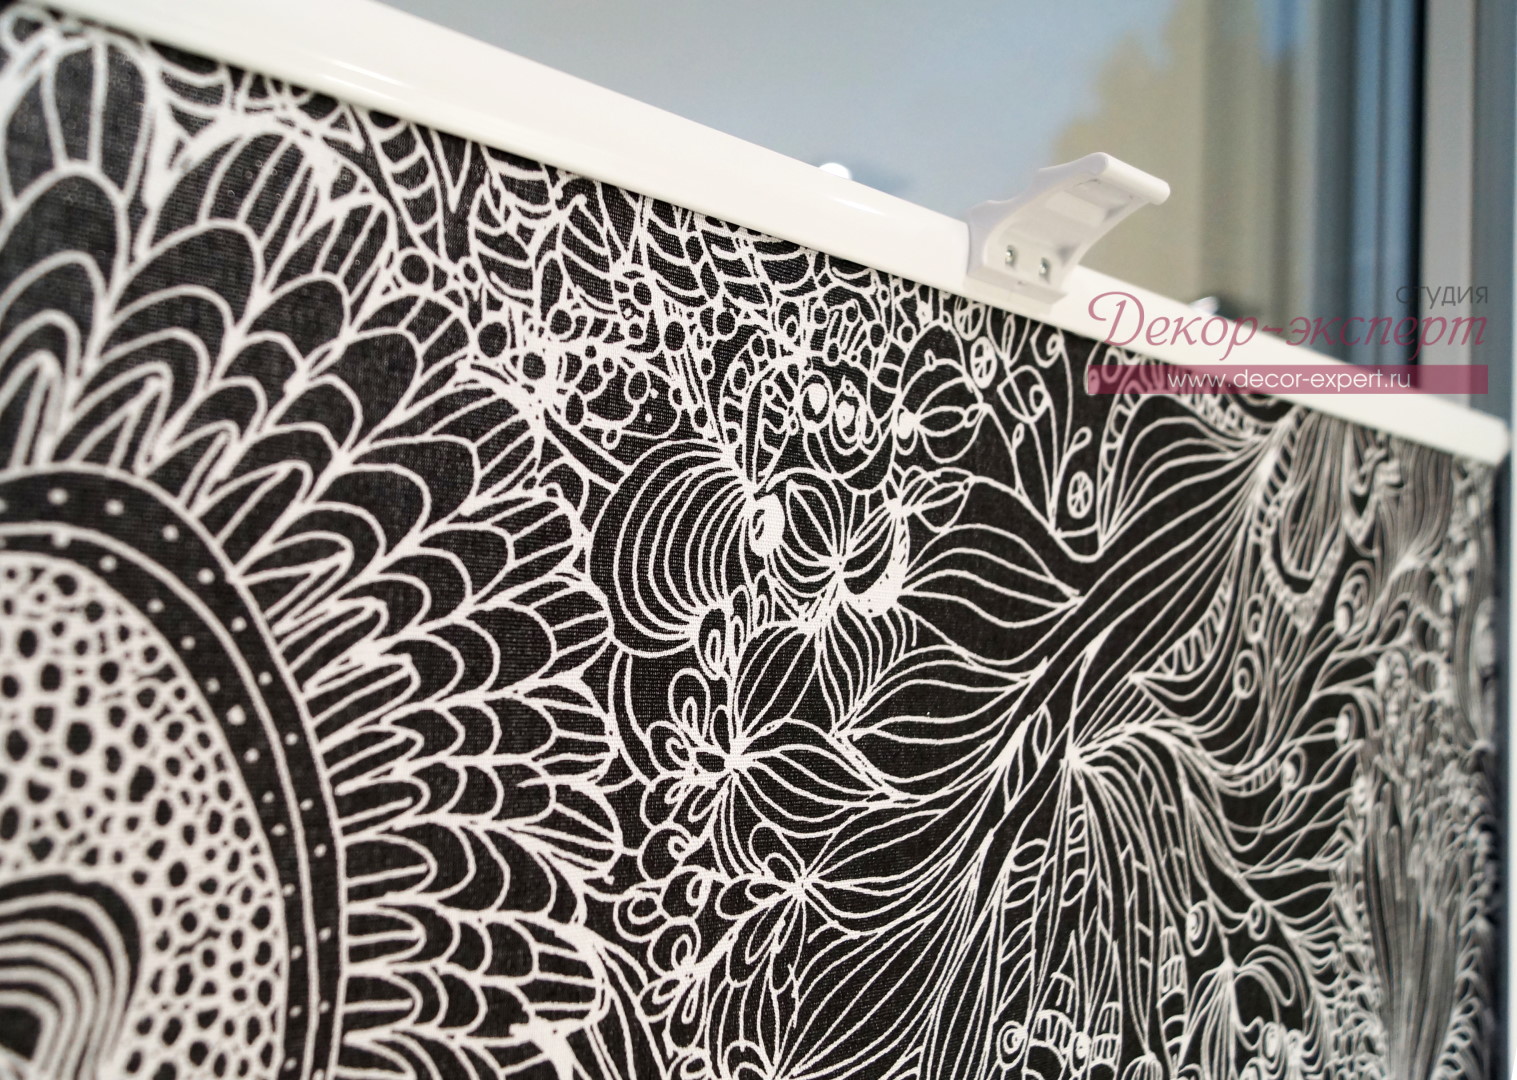 Фрагмент ткани для рулонных штор с контрастным рисунком.